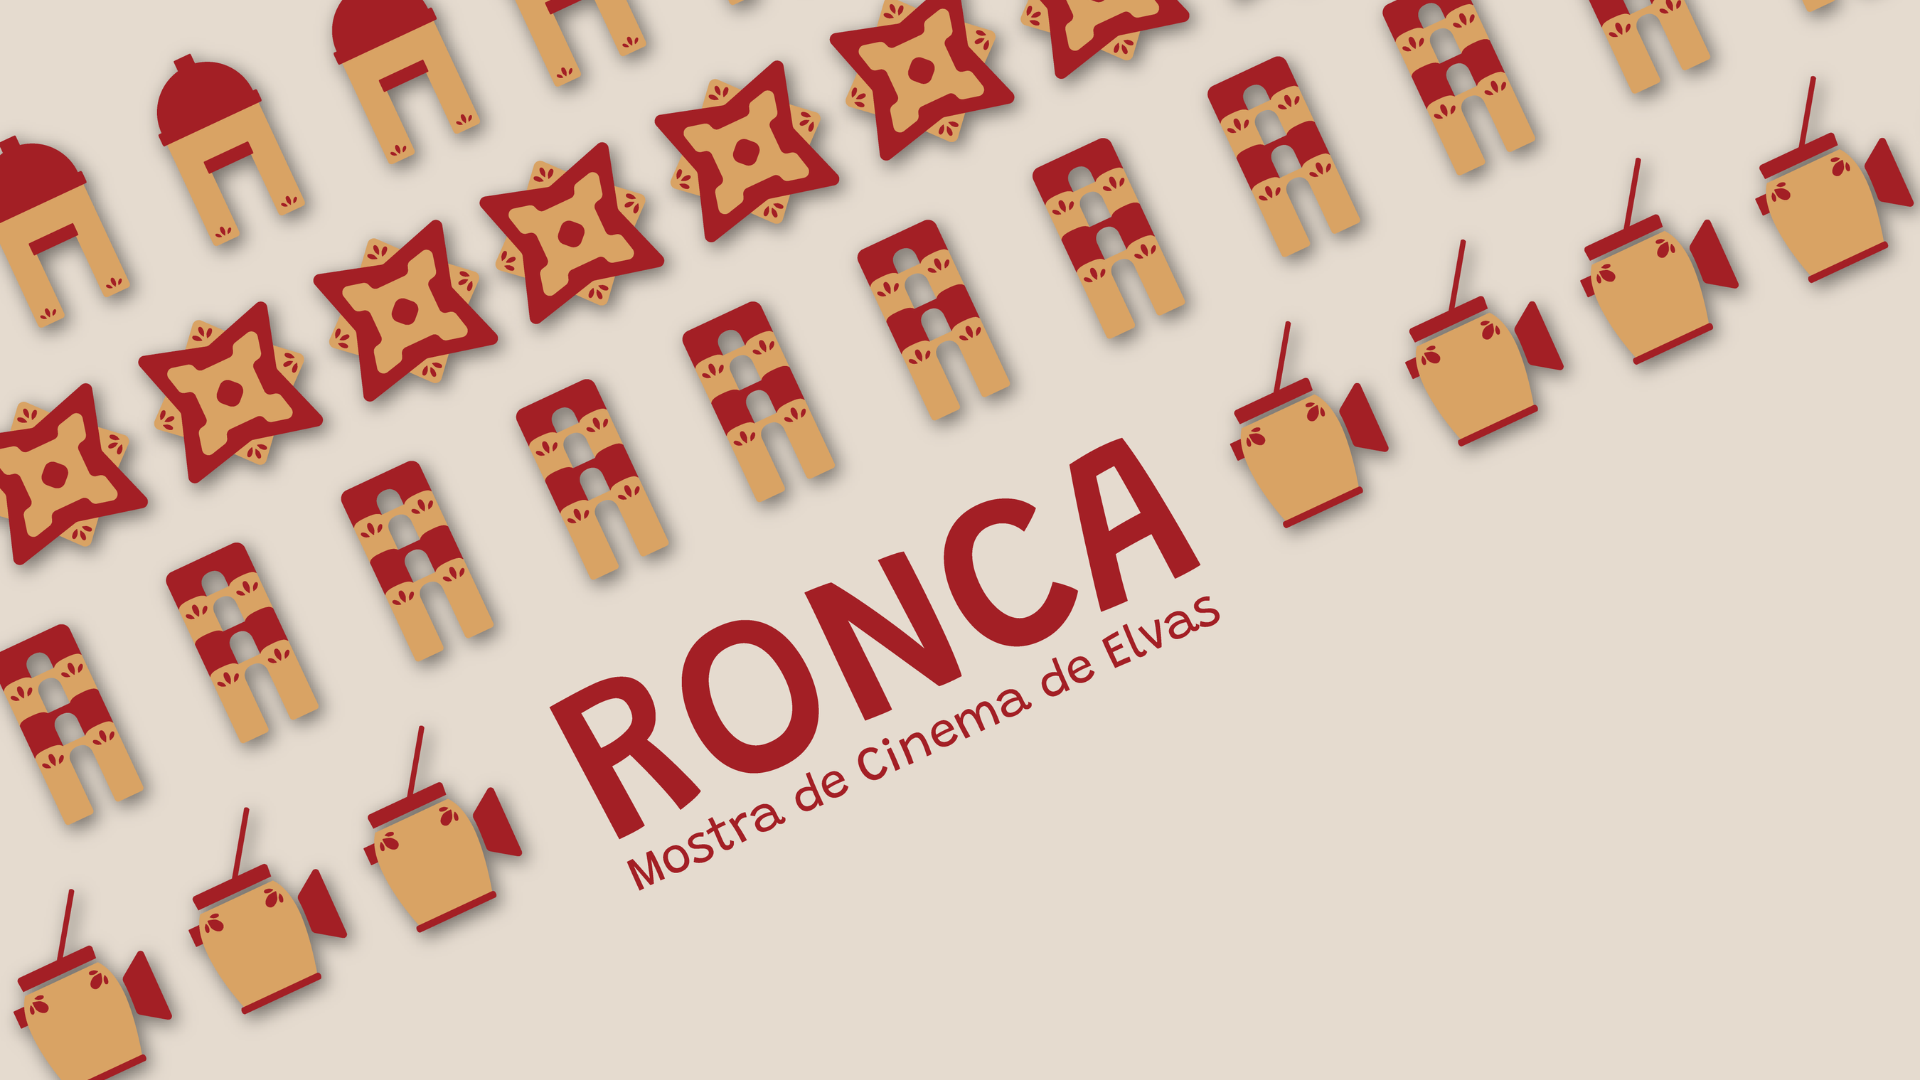 A RONCA – Mostra de Cinema de Elvas está prestes a entrar em cena, nesta primeira edição especial, de 2 a 27 de março